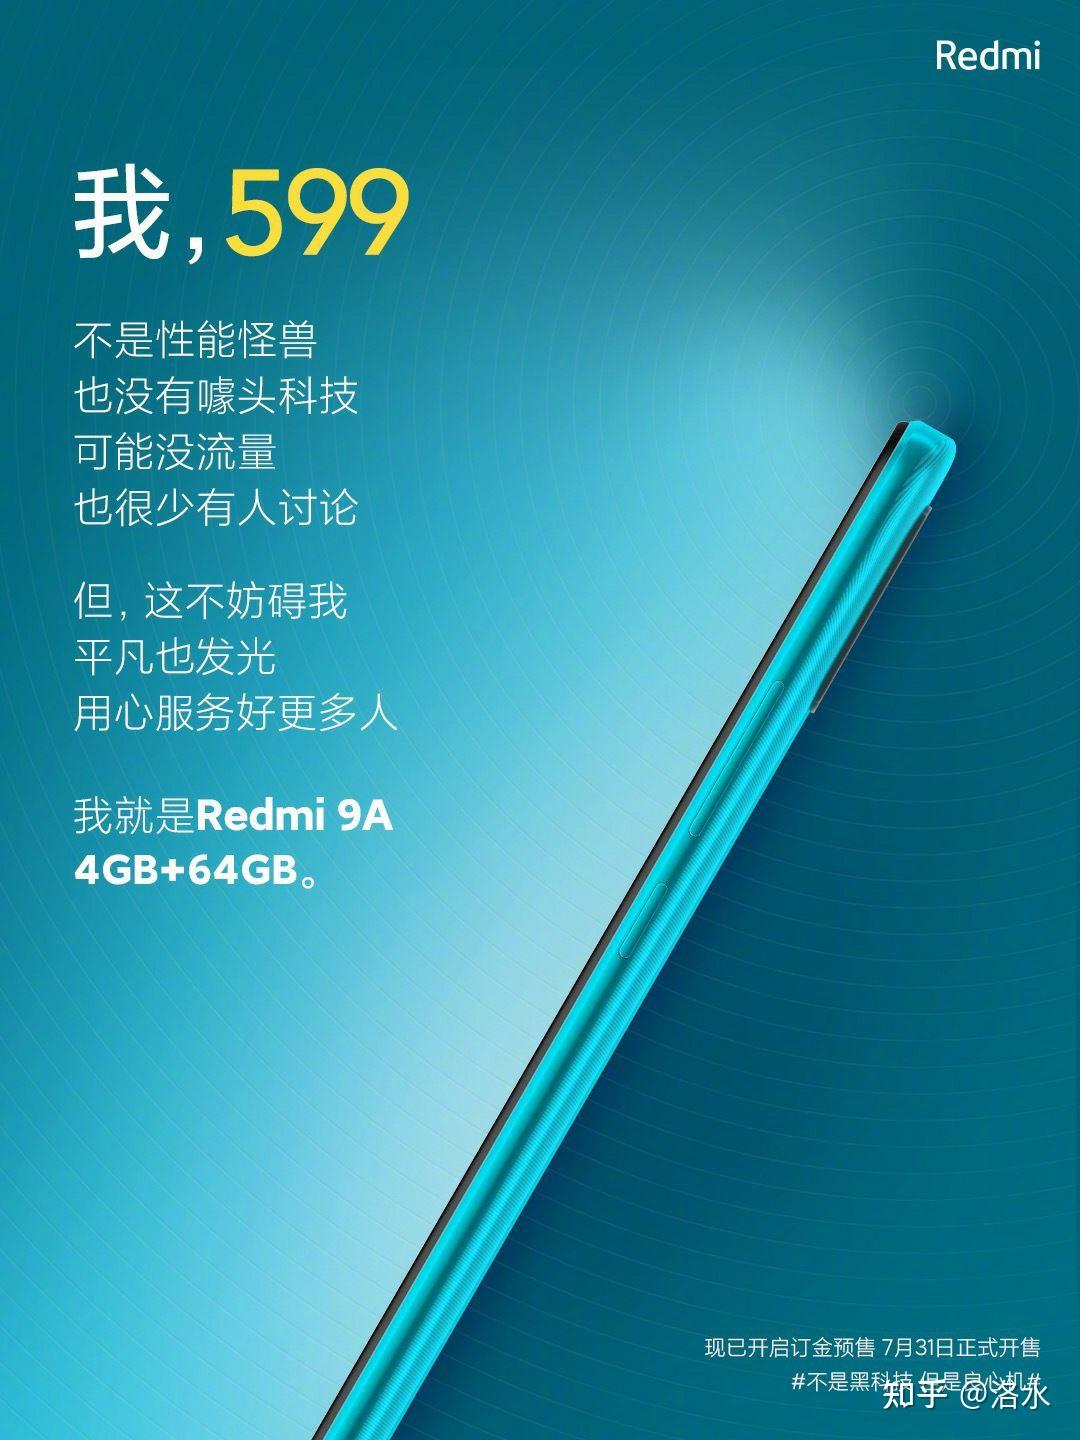 红米手机 3 发布，售价 699 元 - 雷科技